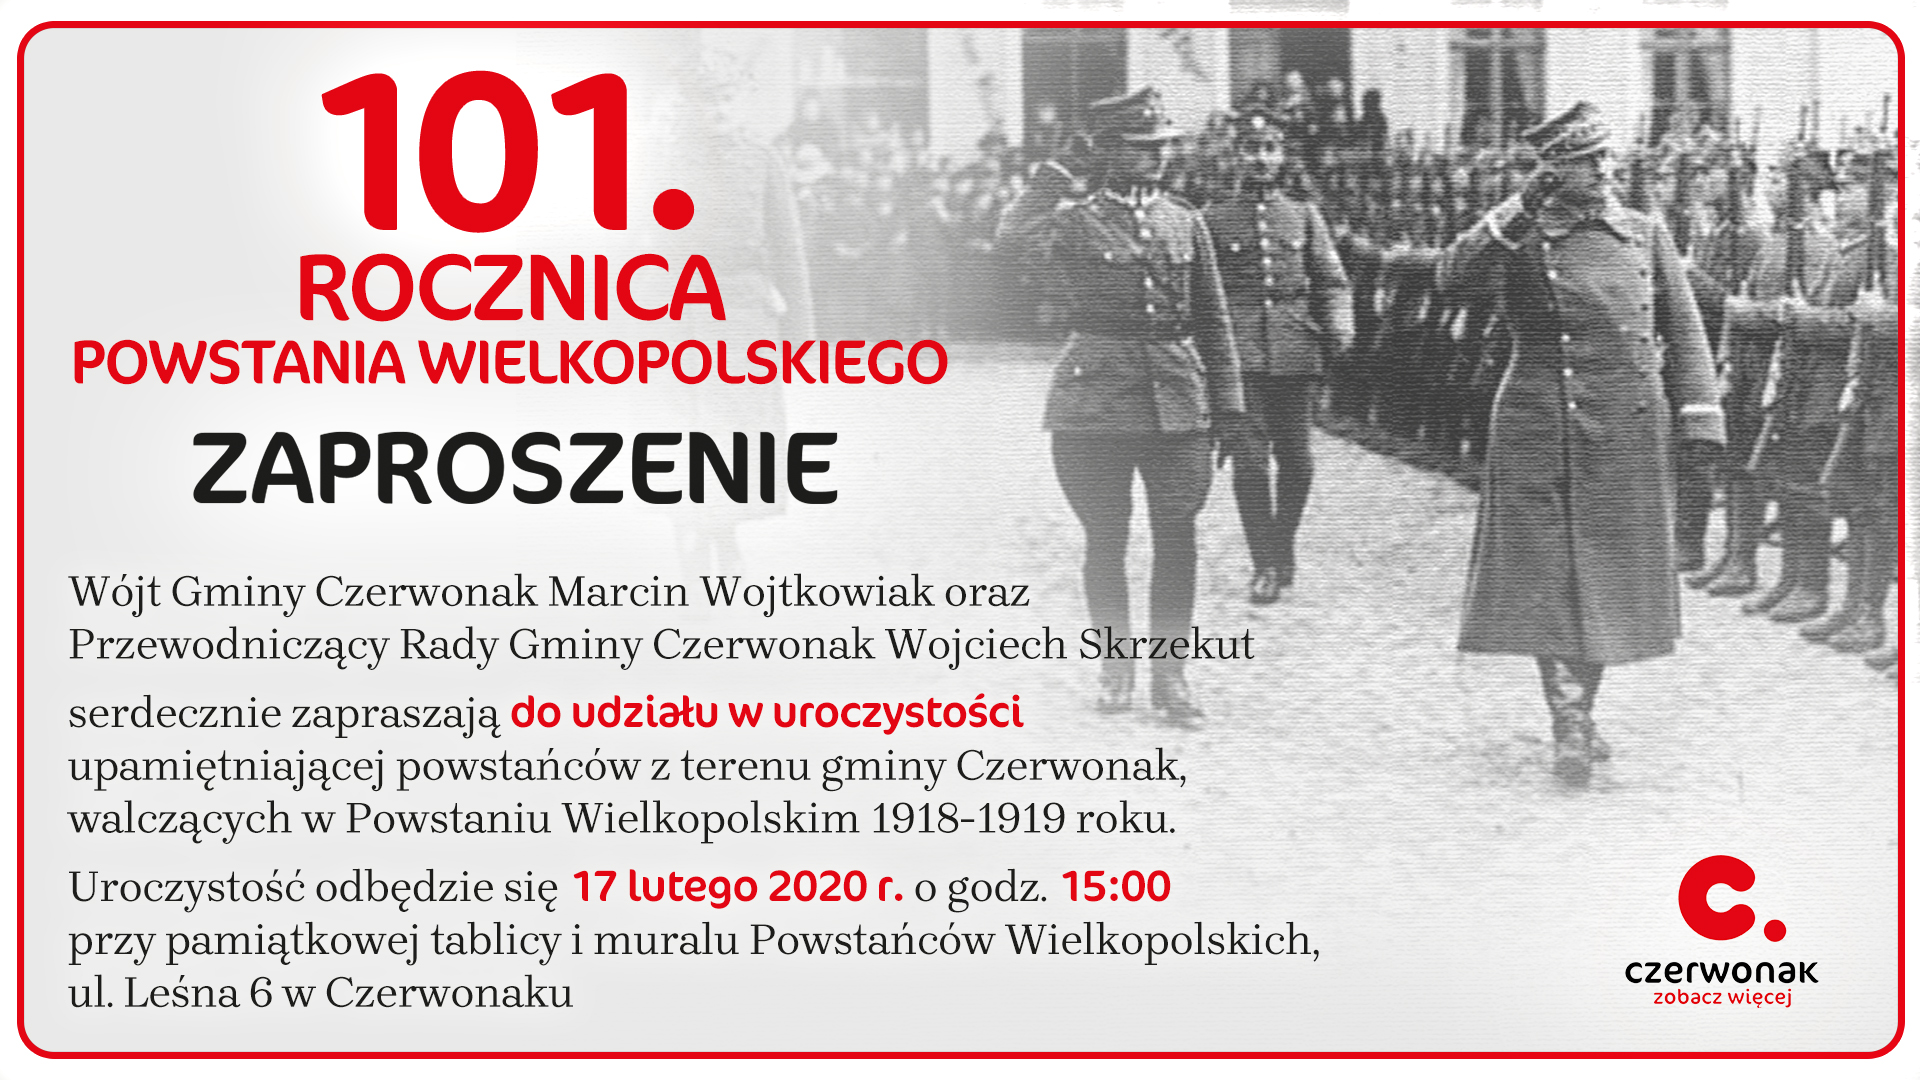 101 rocznica Powstania Wielkopolskiego